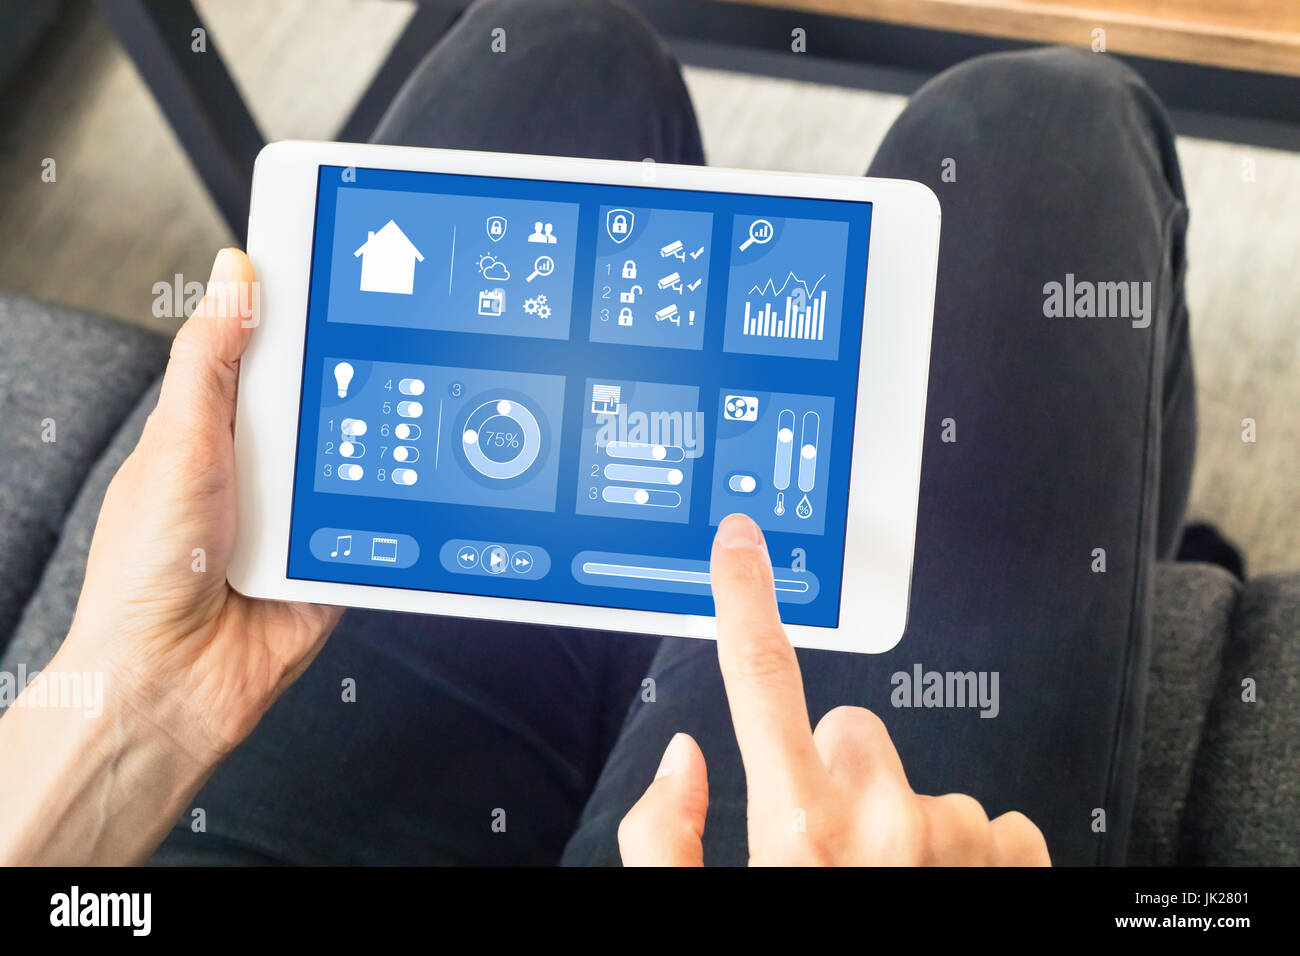 Personne à l'aide de smart home automation planche de bord sur un ordinateur tablette numérique avec internet des objets (IOT) pour contrôler les objets connectés (éclairage, sécurité Banque D'Images